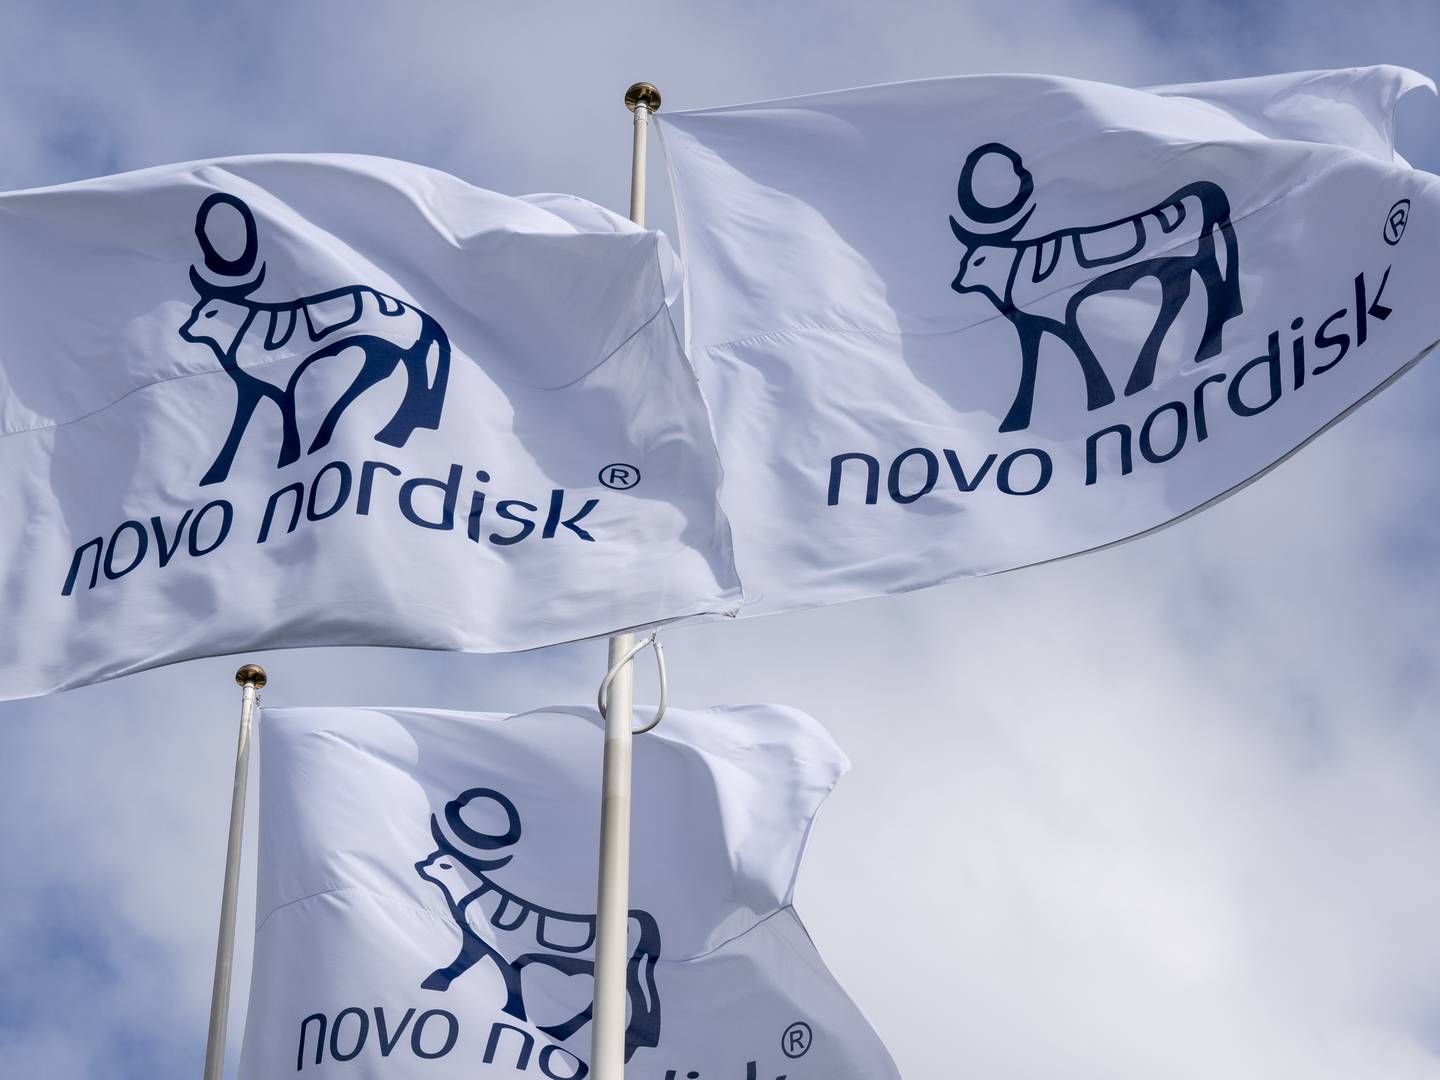 Novo Holdings, der har store aktieposter i biotekselskaberne Novo Nordisk og Novozymes, var den største bidragyder mht. selskabsskat i 2020. | Foto: Novo Nordisk / PR